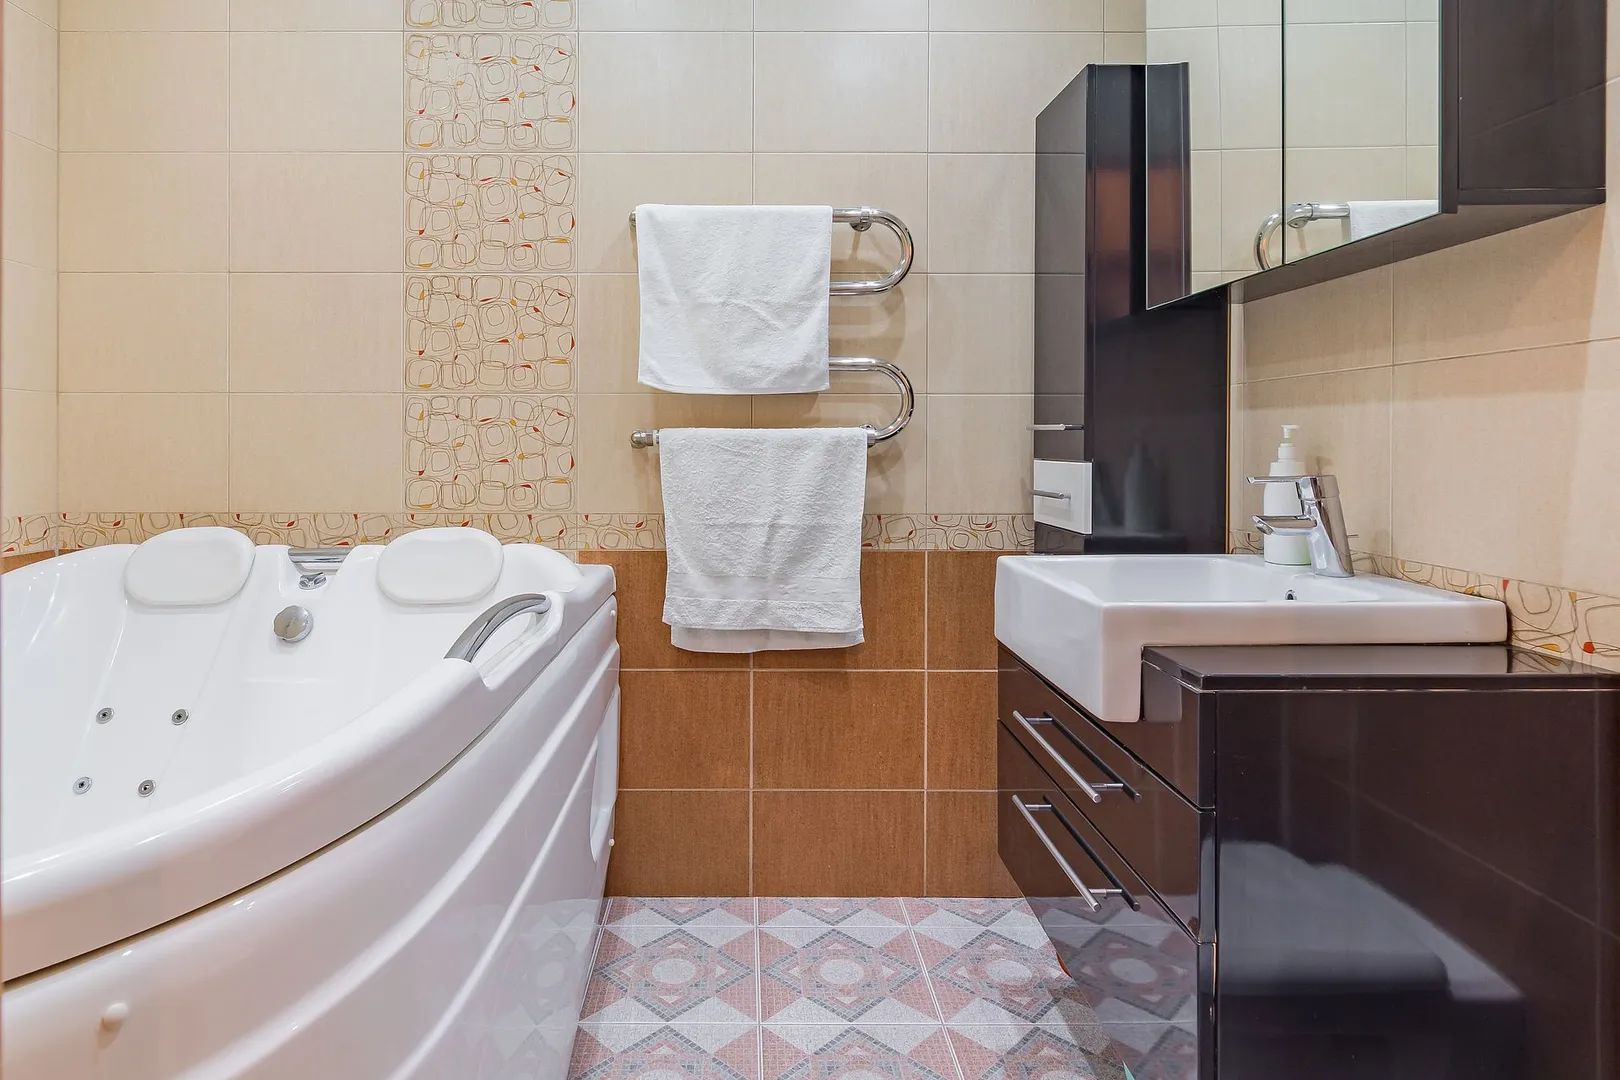 Современный дизайн ванной комнаты с увеличенной площадью и множеством вариантов подсветки.